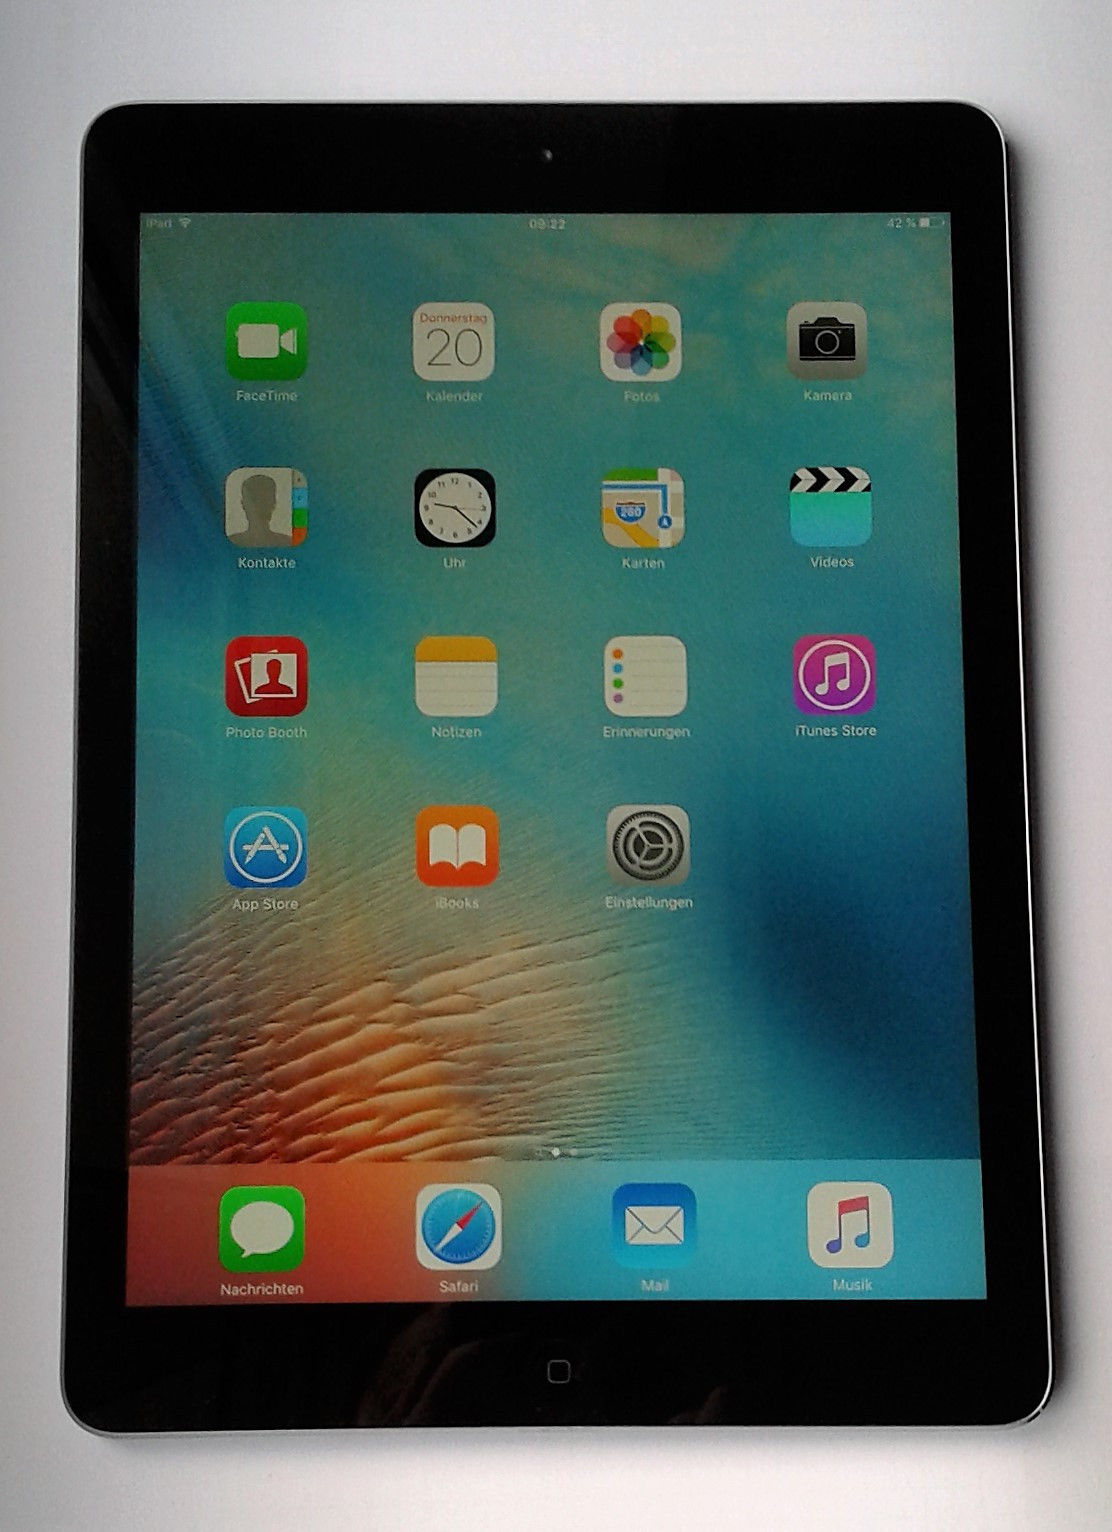 Apple iPad Air Wi-Fi 16 GB, 9,7 Zoll - Spacegrau - iOS 10.2 - WLAN - MD785FD/B